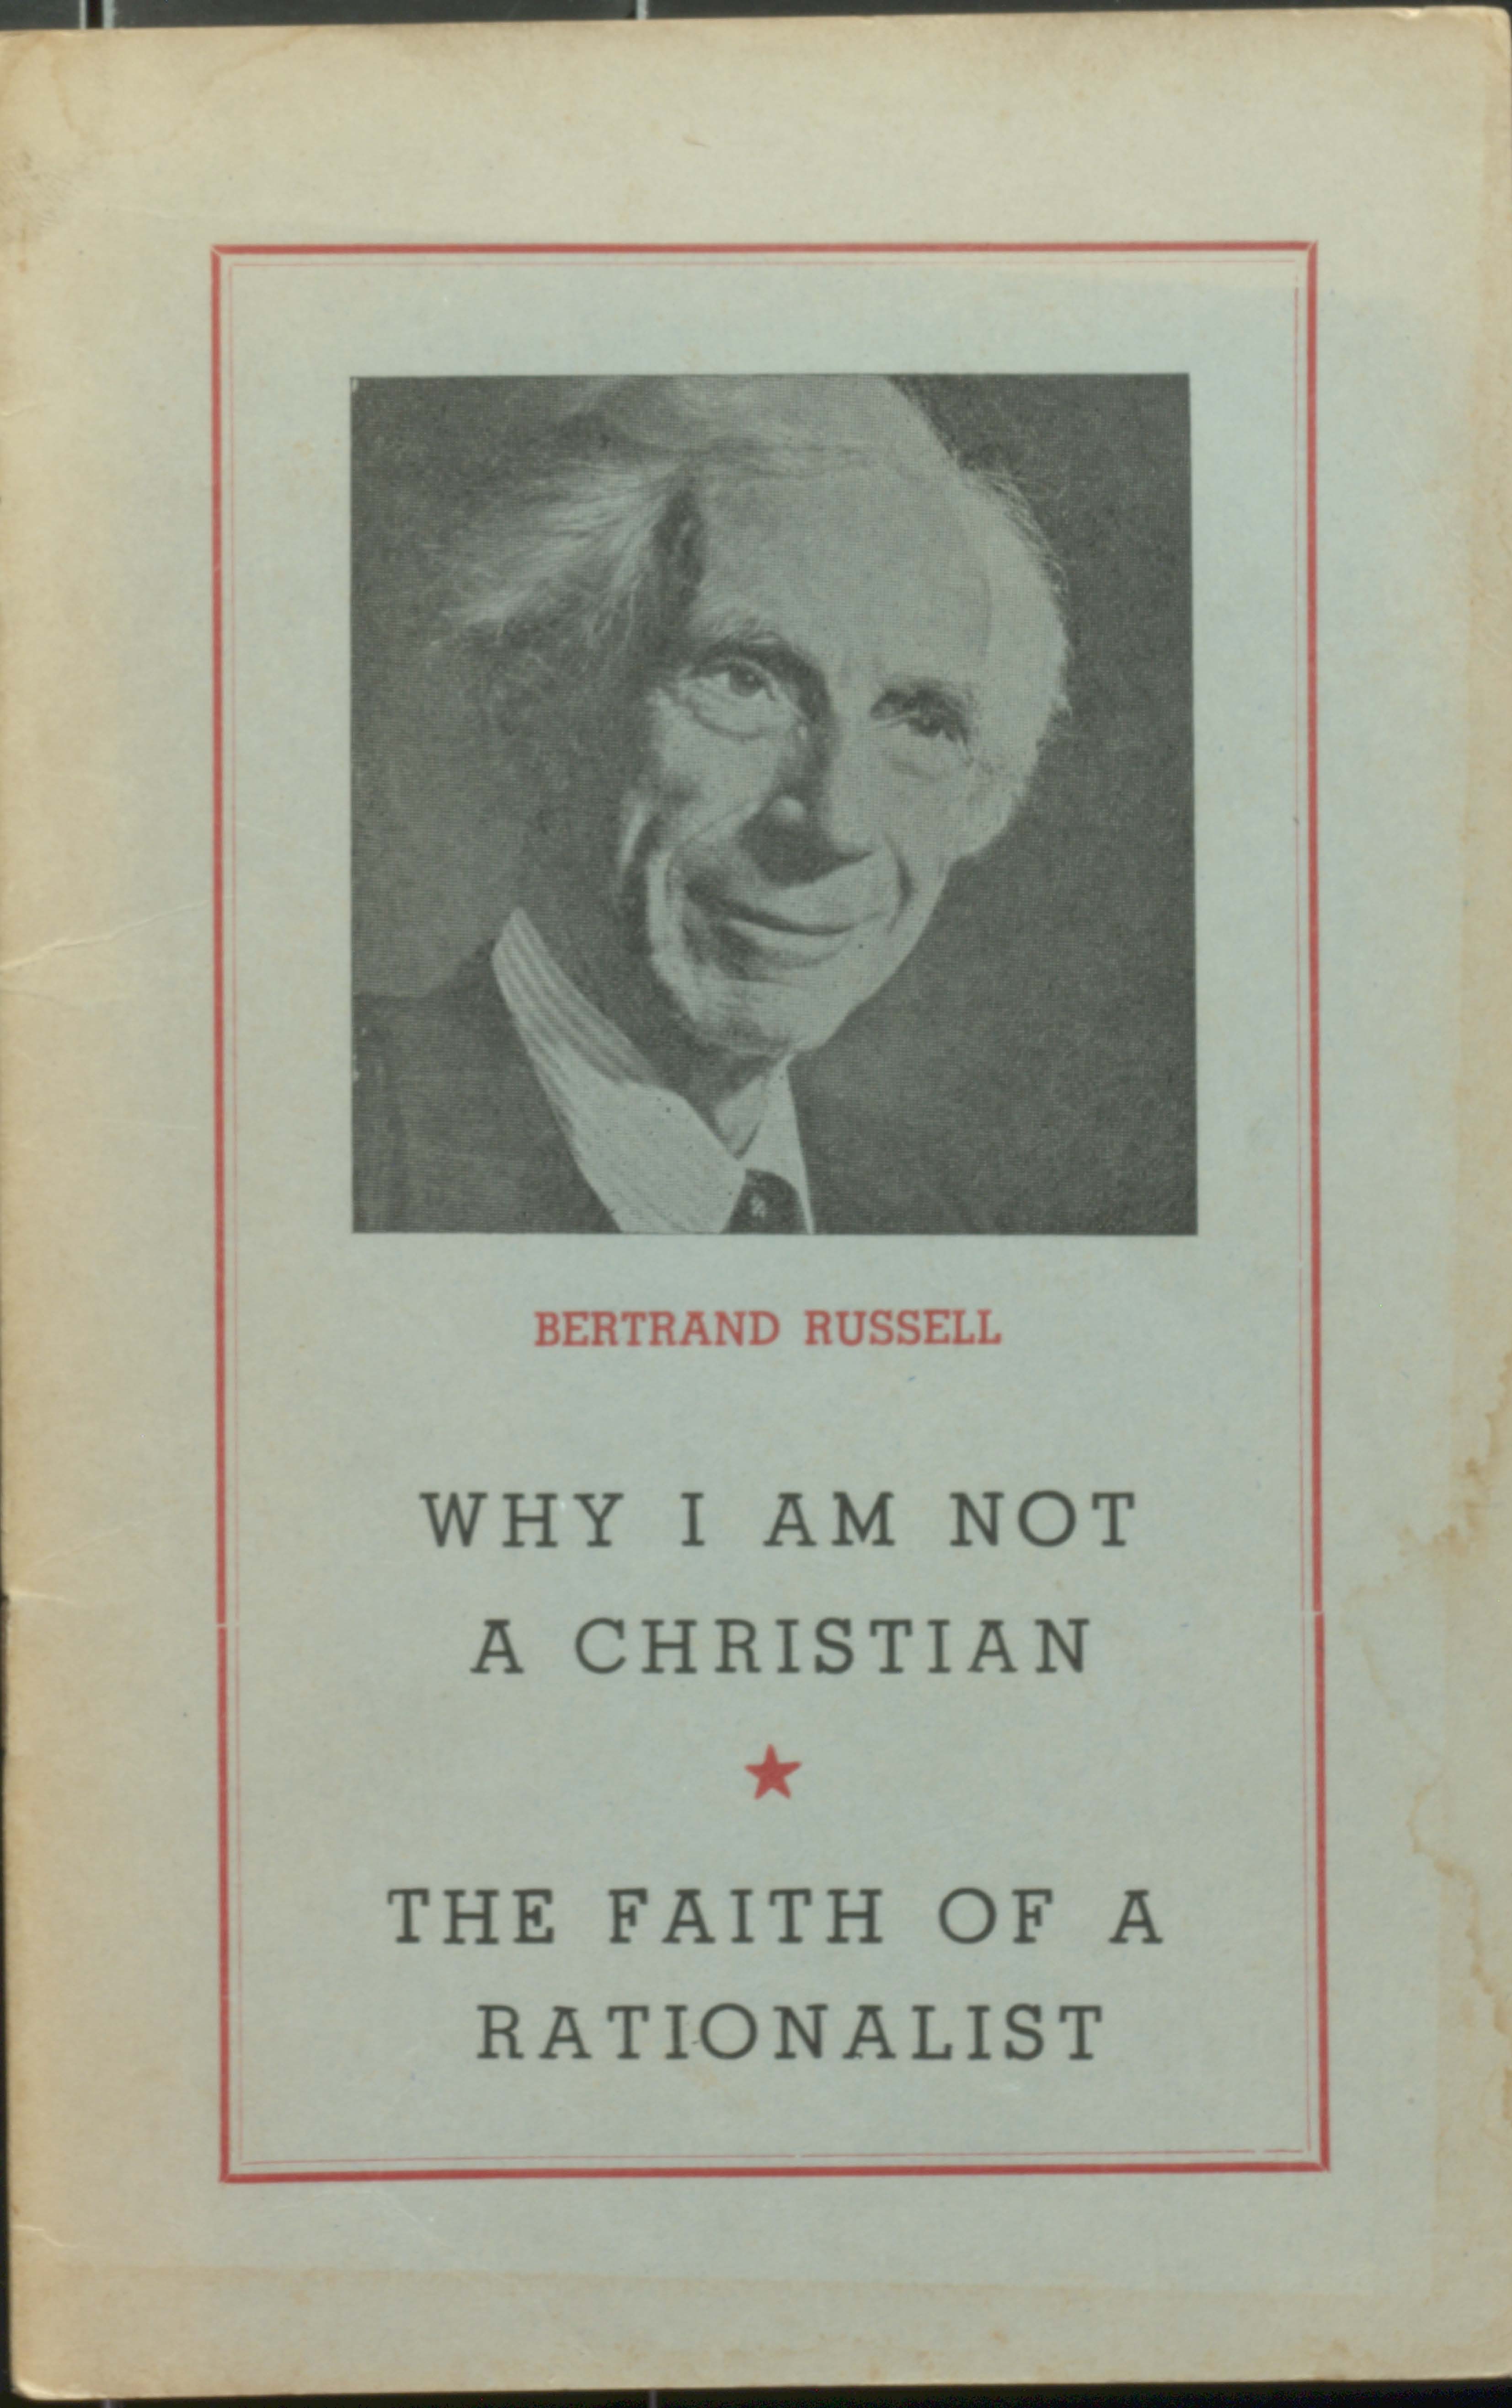 The Faith Of A Rationalist